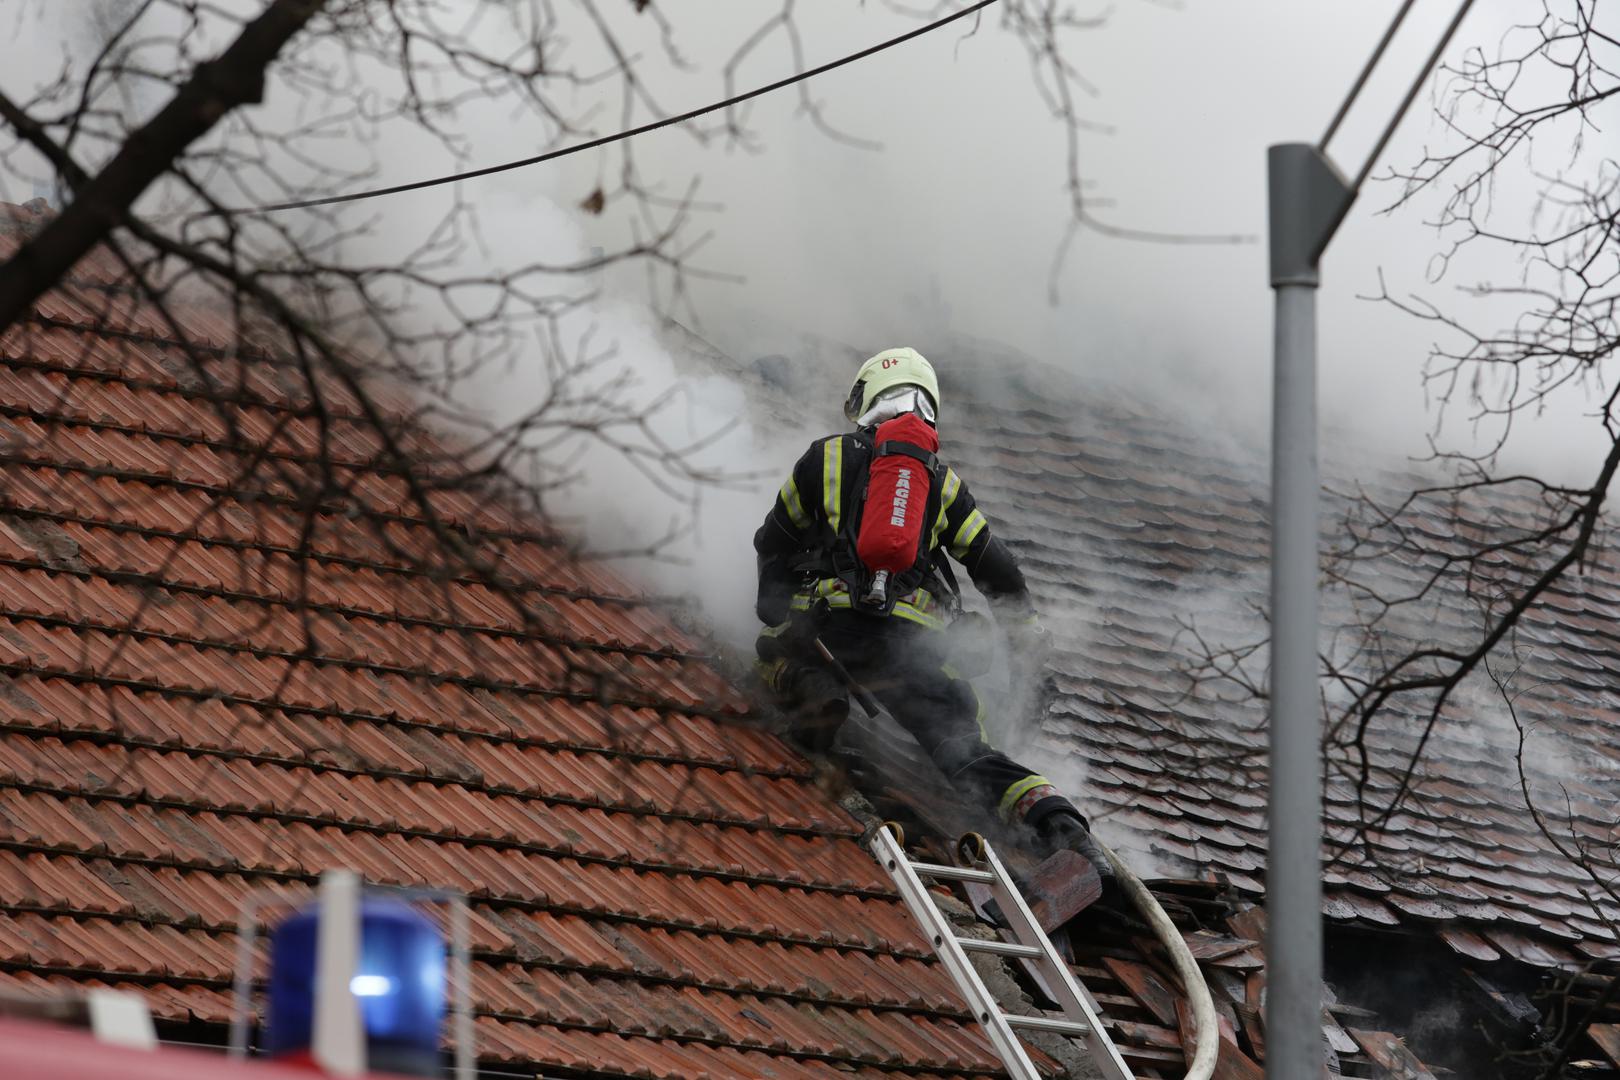 U Petrovoj ulici na broju 95 u Zagrebu danas je došlo do požara na krovištu kuće.

Na teren su izašla četiri vatrogasna vozila. 